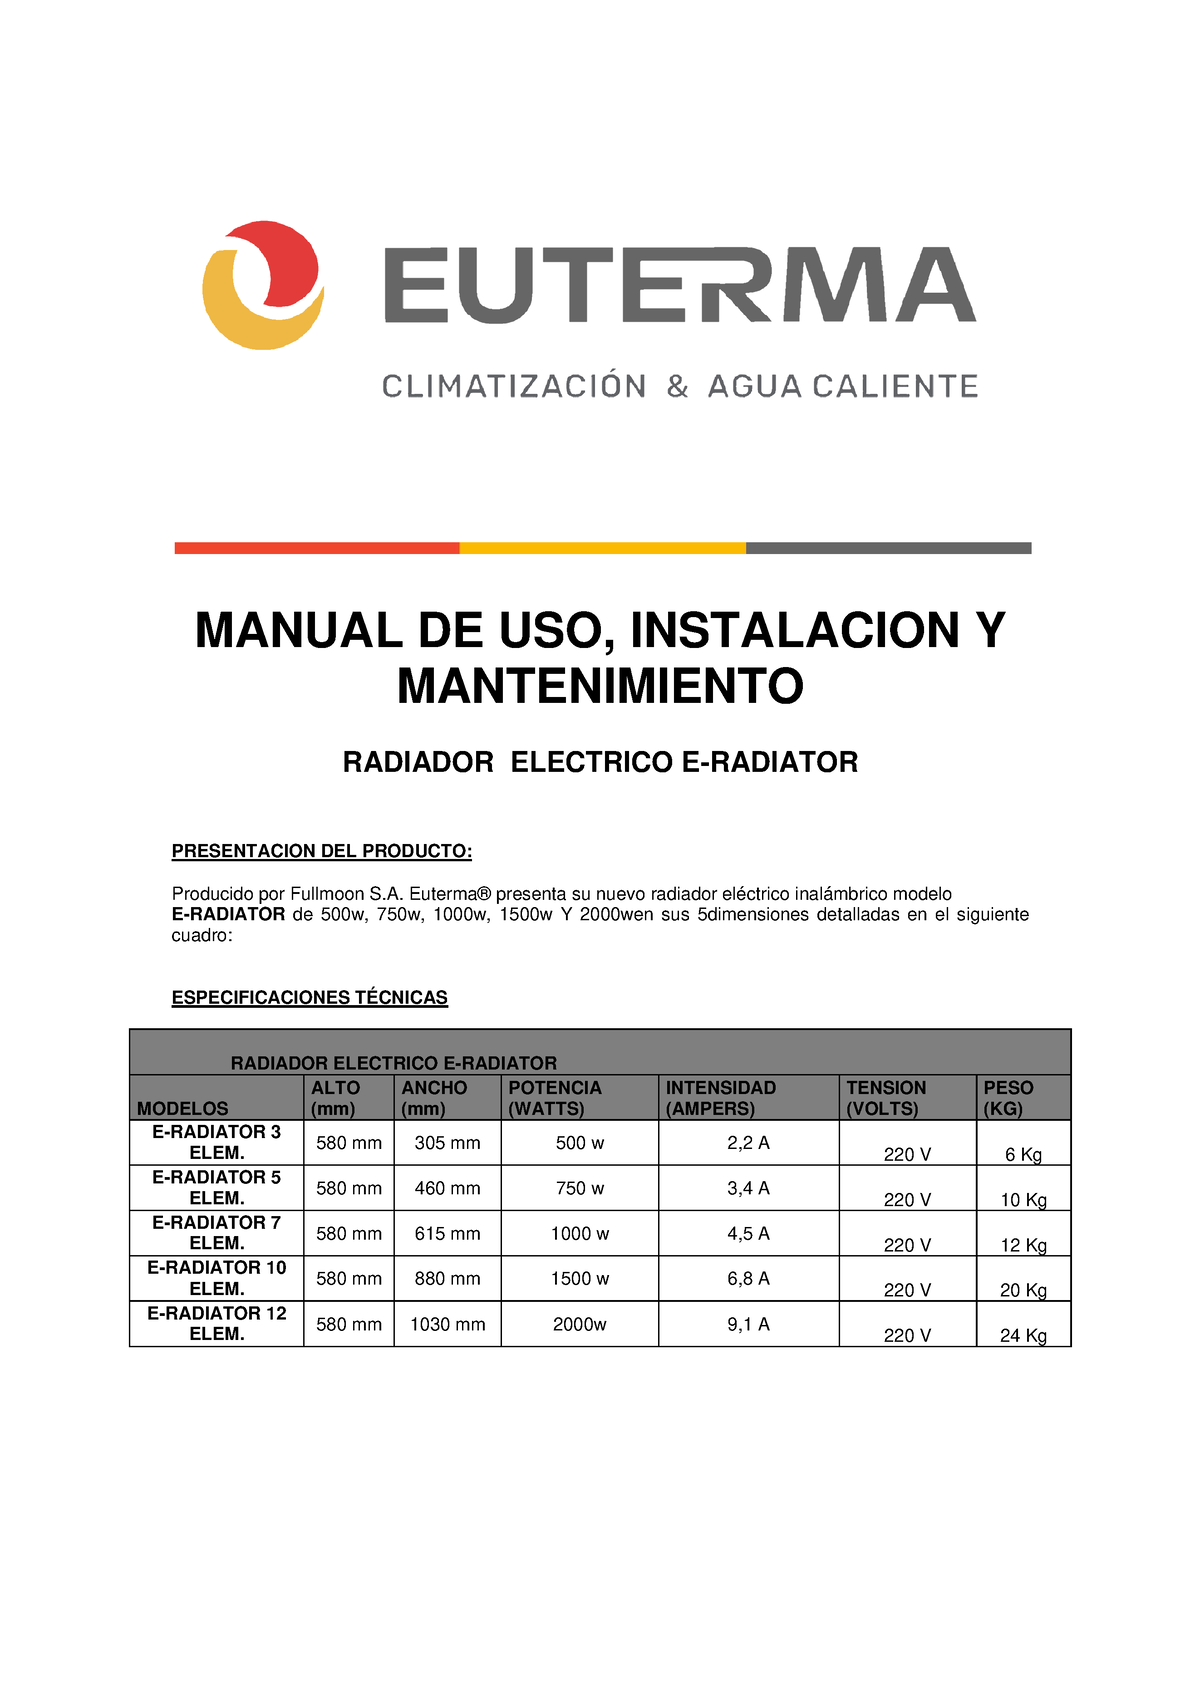 EUTERMA Radiador Electrico 750W – La Plata Clima